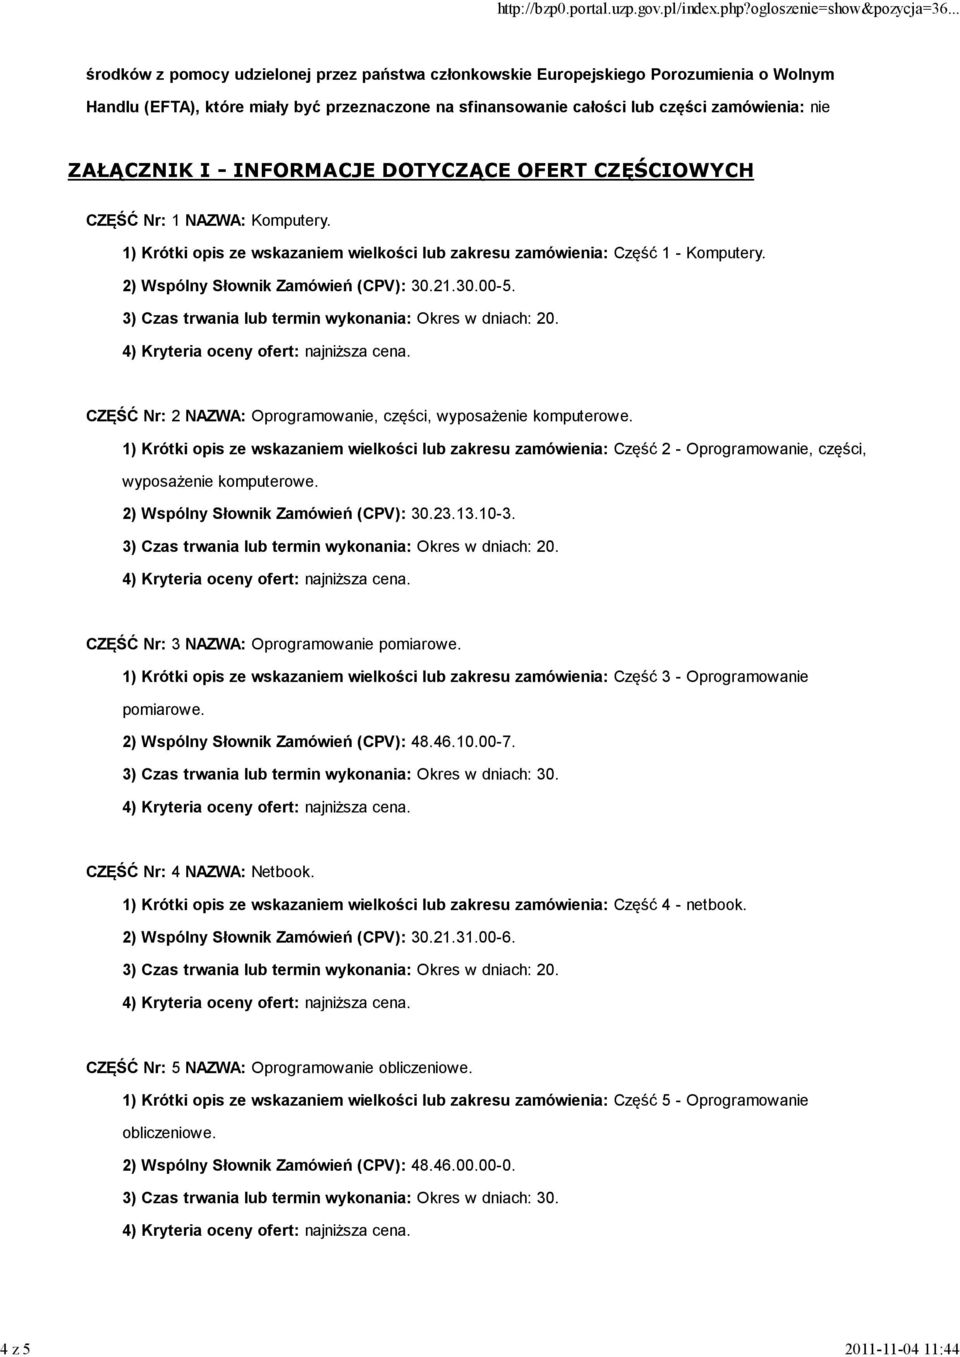 2) Wspólny Słownik Zamówień (CPV): 30.21.30.00-5. CZĘŚĆ Nr: 2 NAZWA: Oprogramowanie, części, wyposażenie komputerowe.